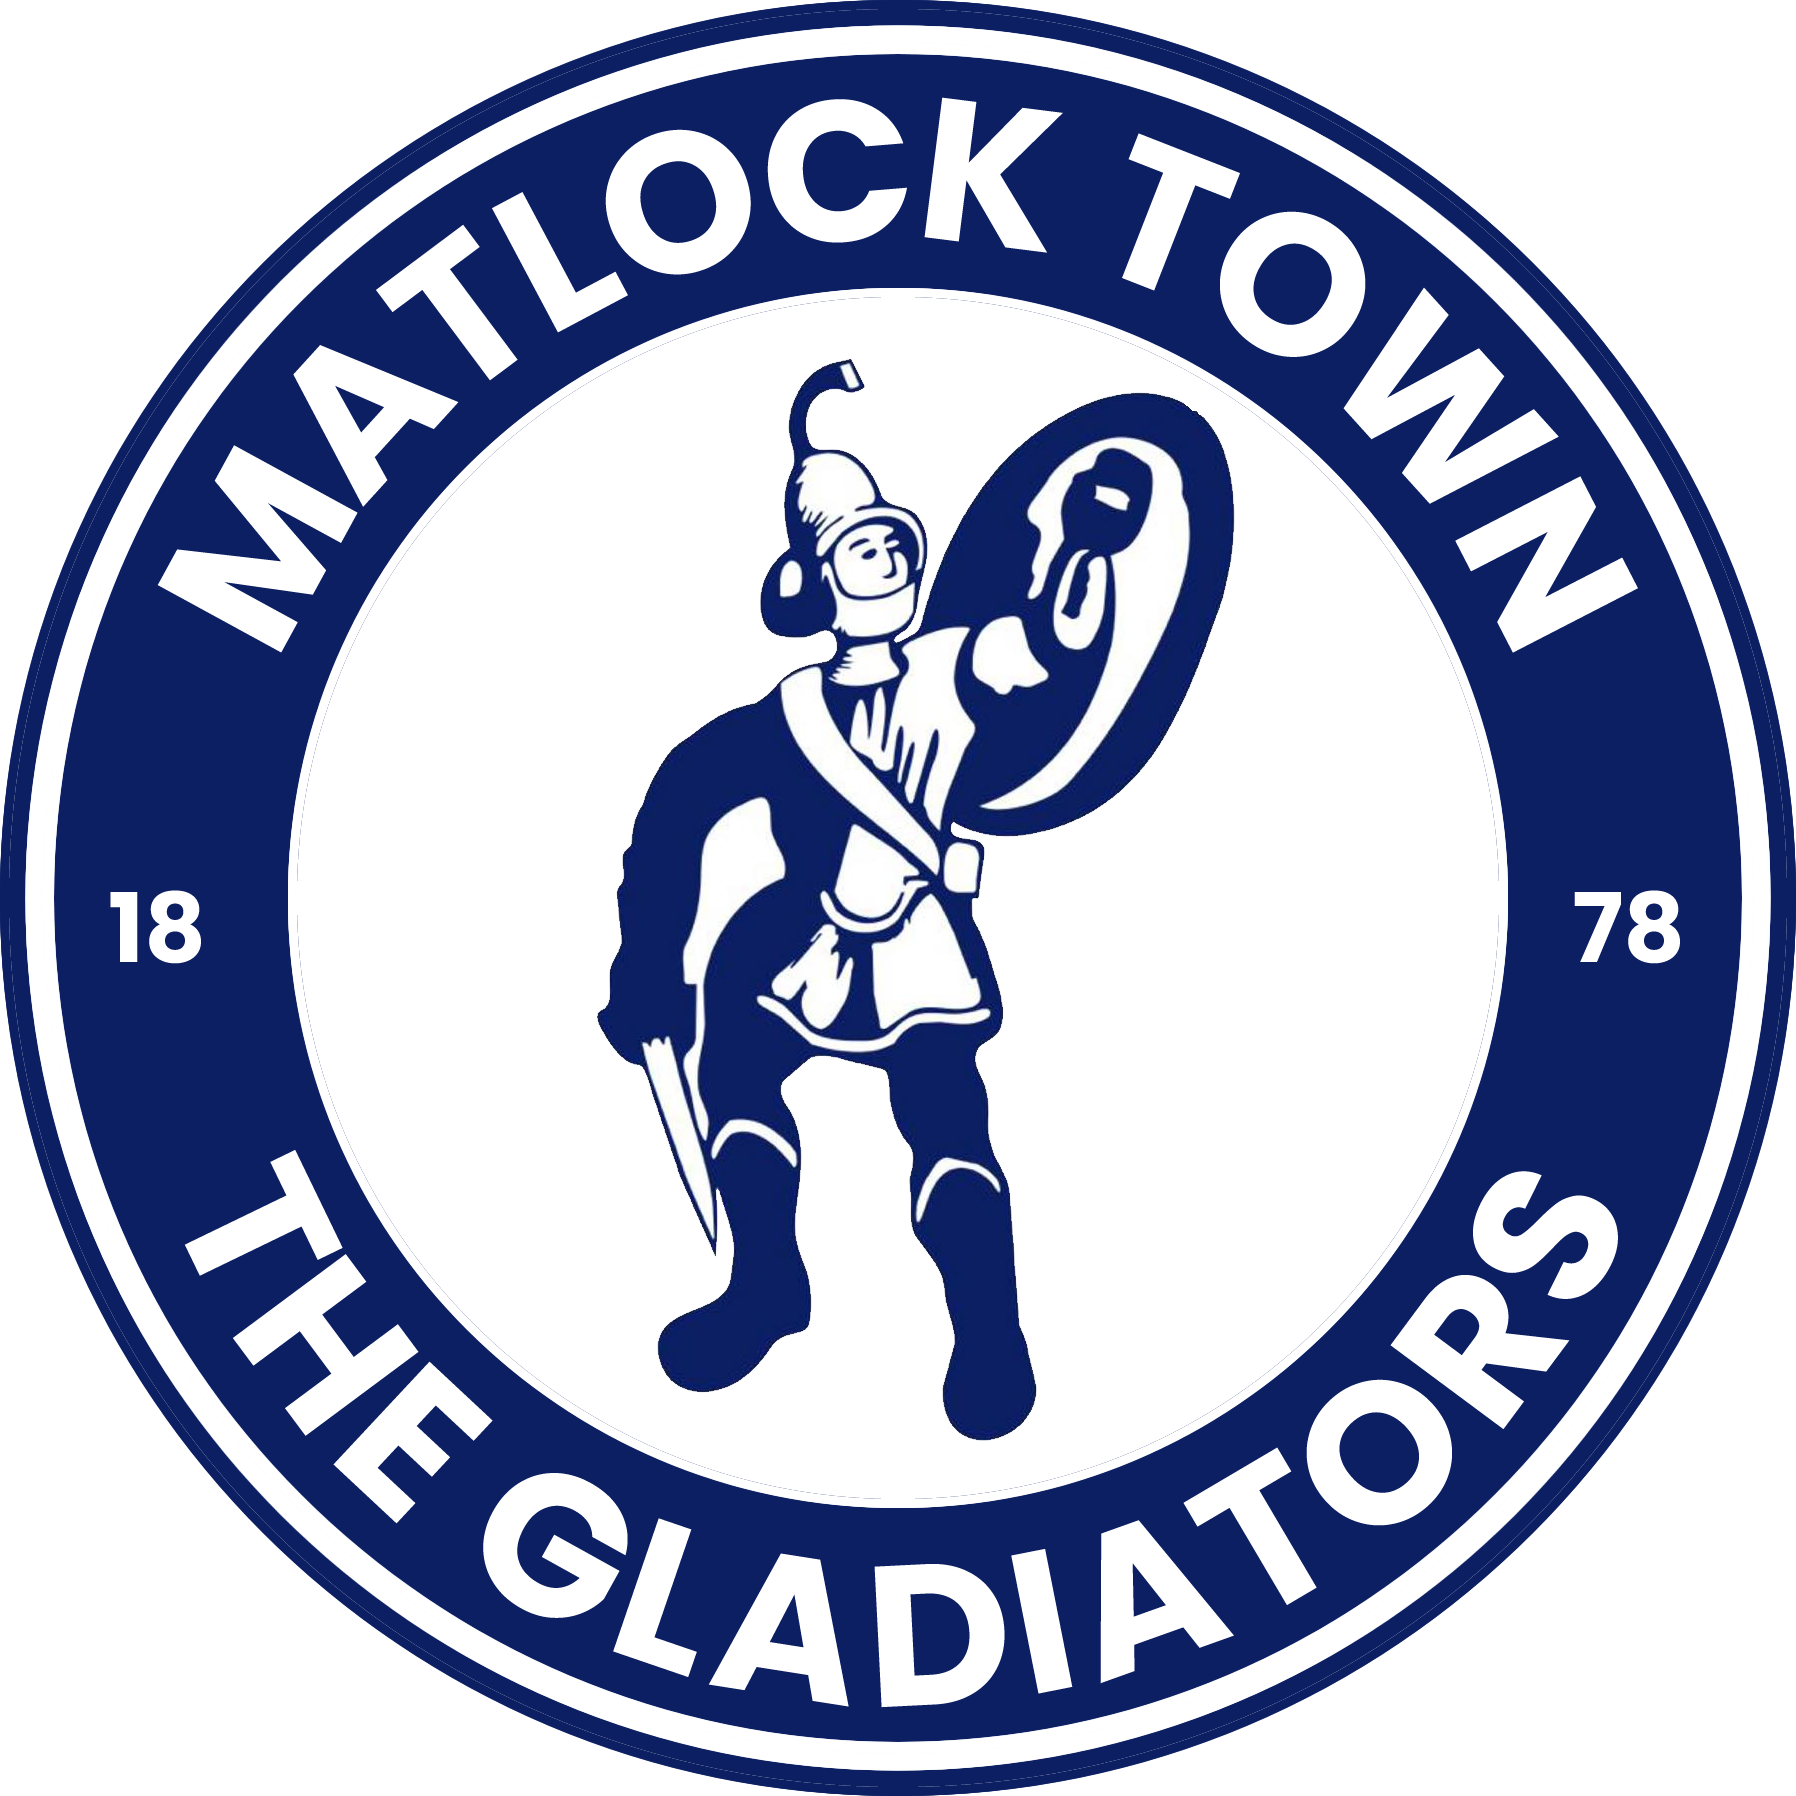 Club Matlock Town FC